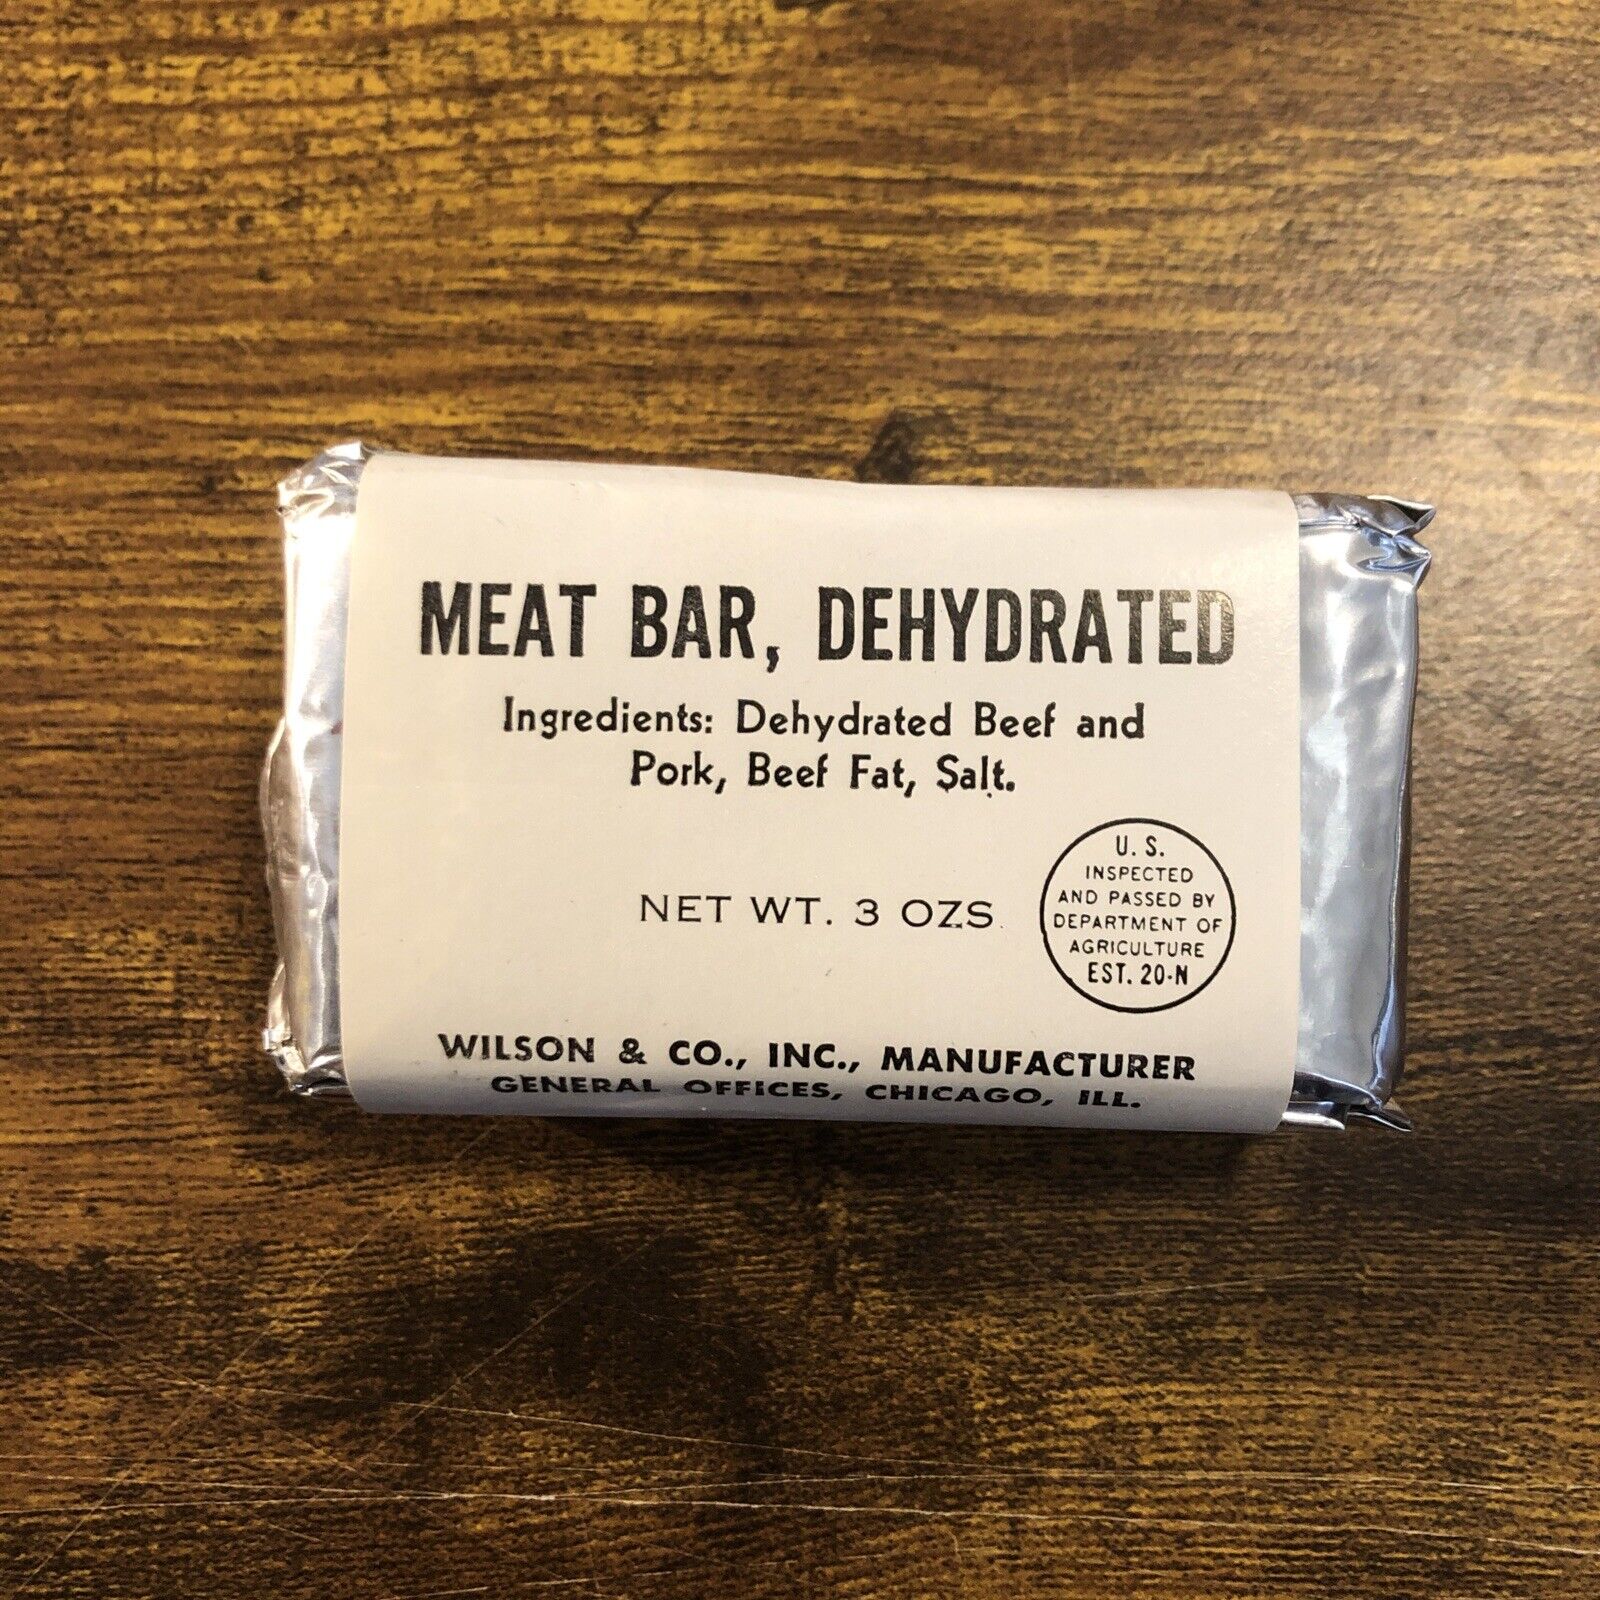 Vietnam War Era Survival Ration Dehydrated Meat Bar Feb 1968